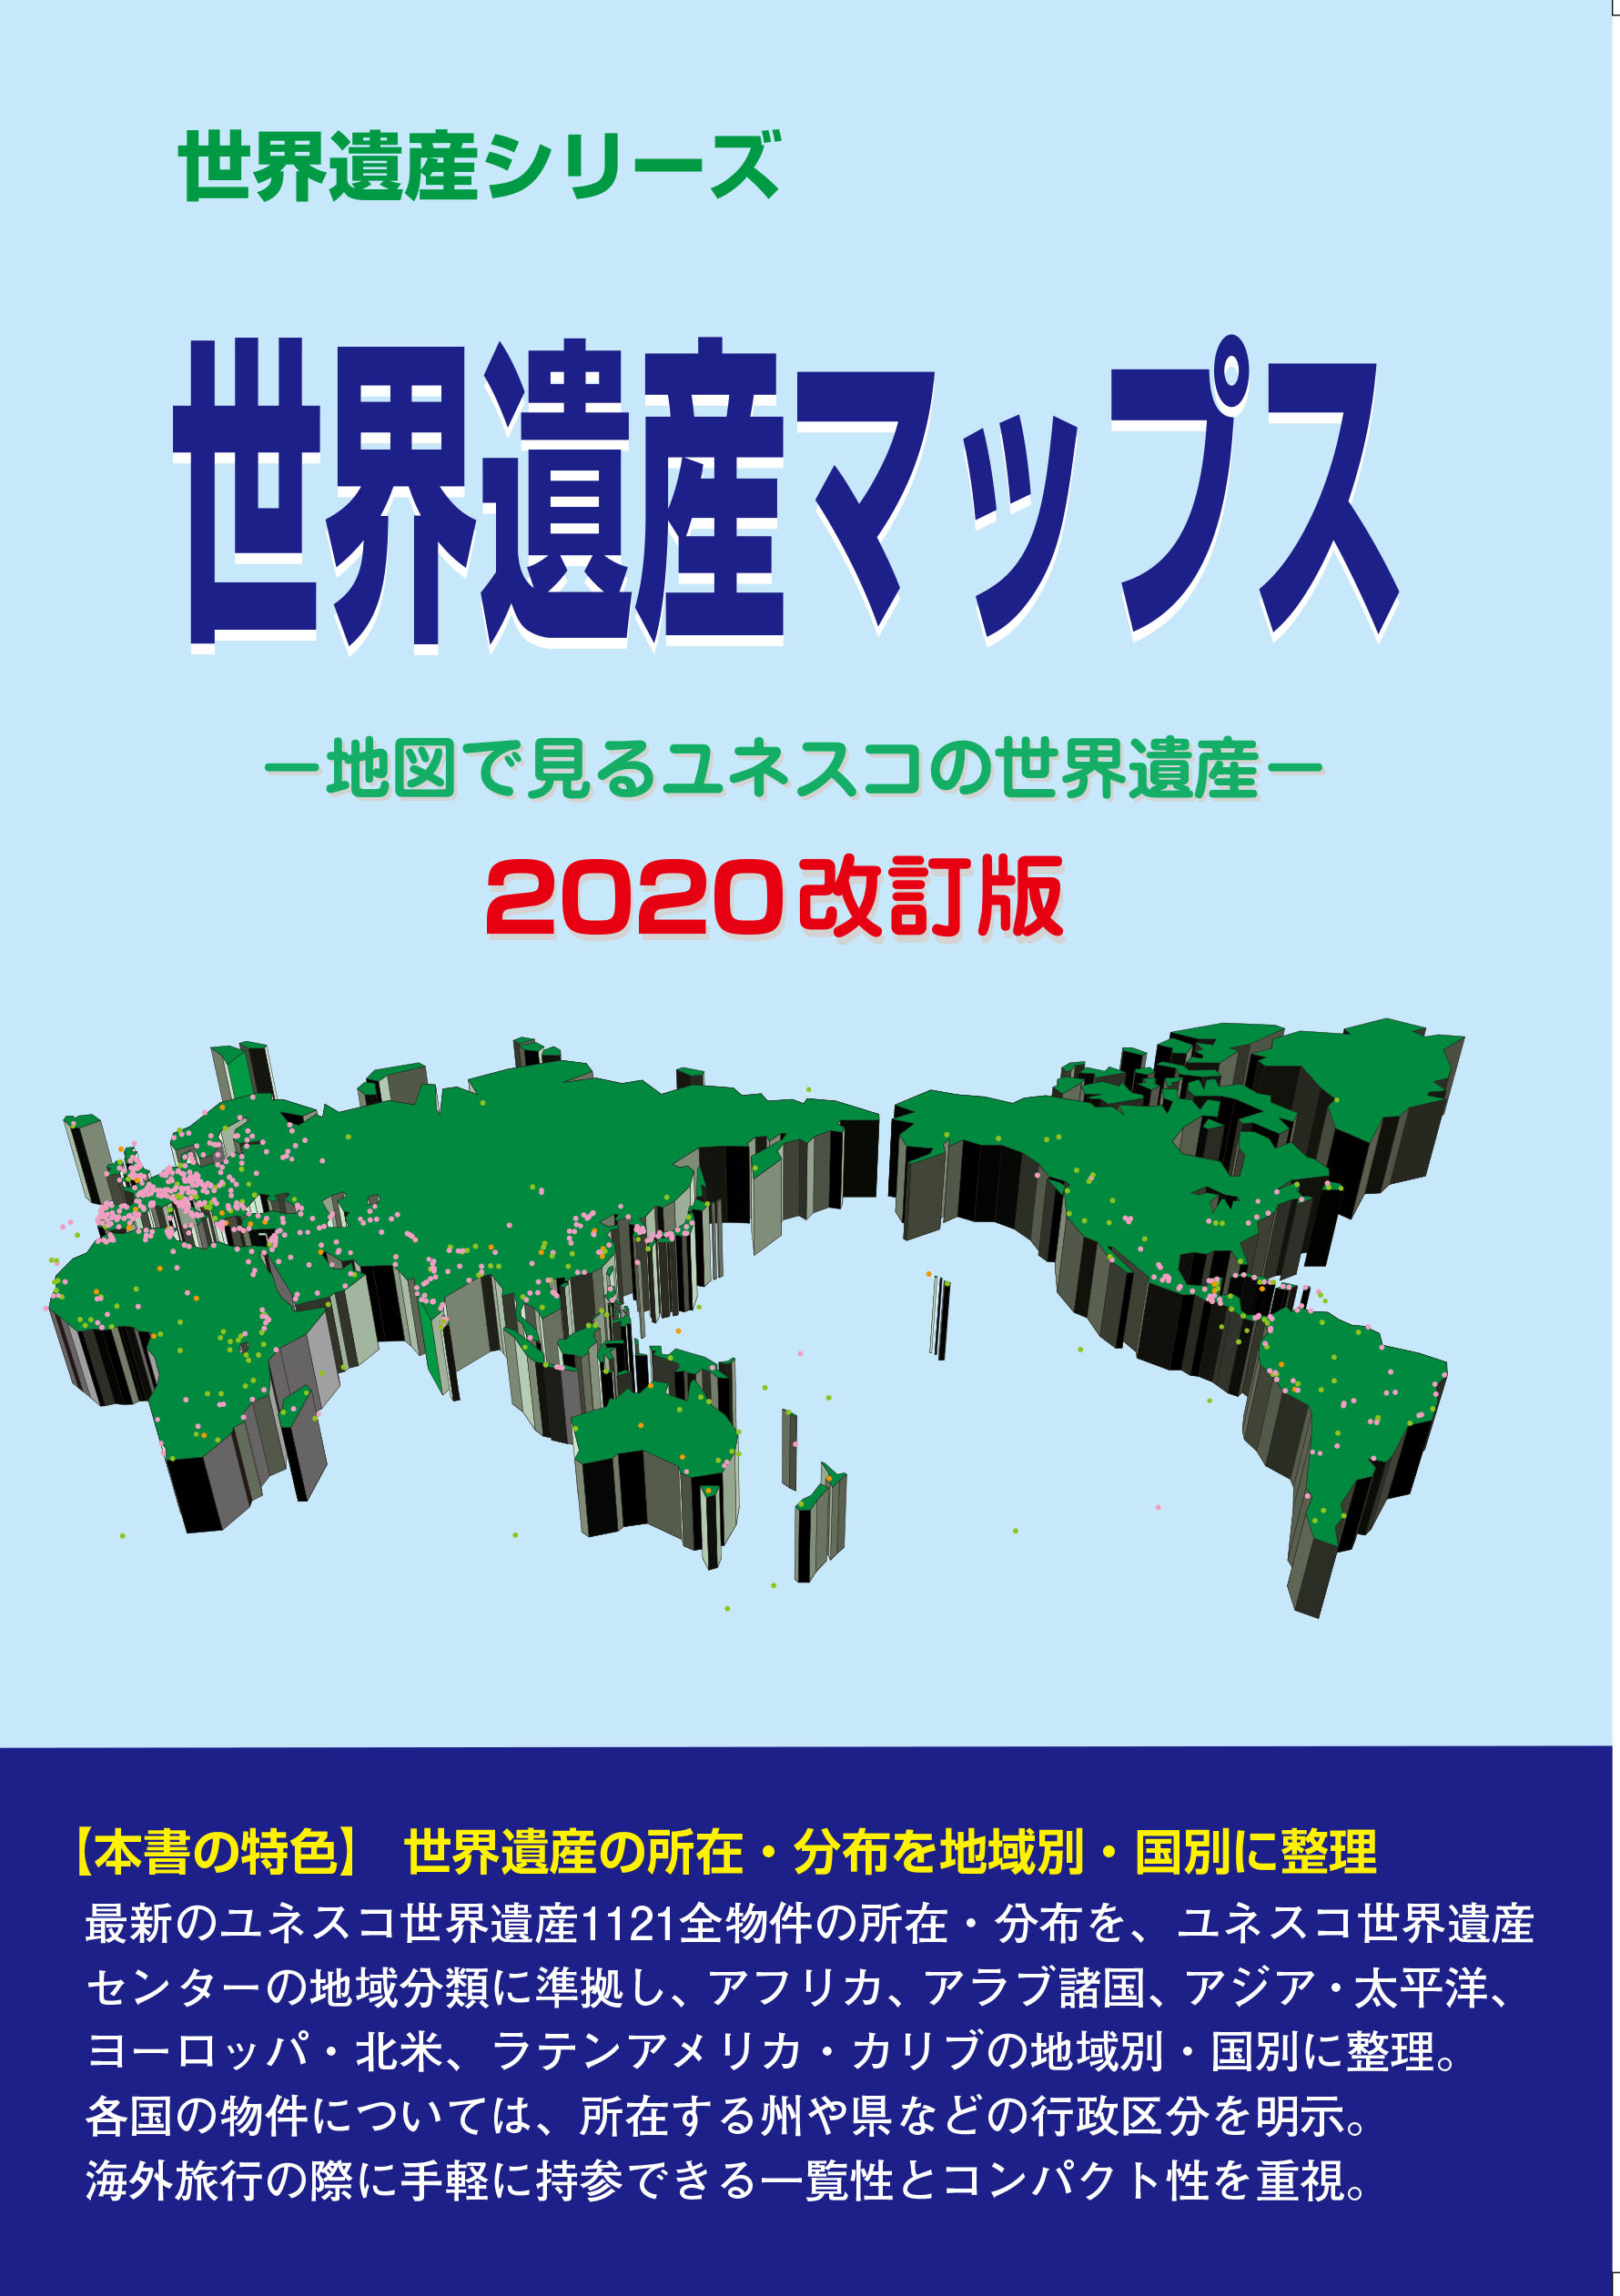 世界遺産マップス−地図で見るユネスコの世界遺産−2020改訂版